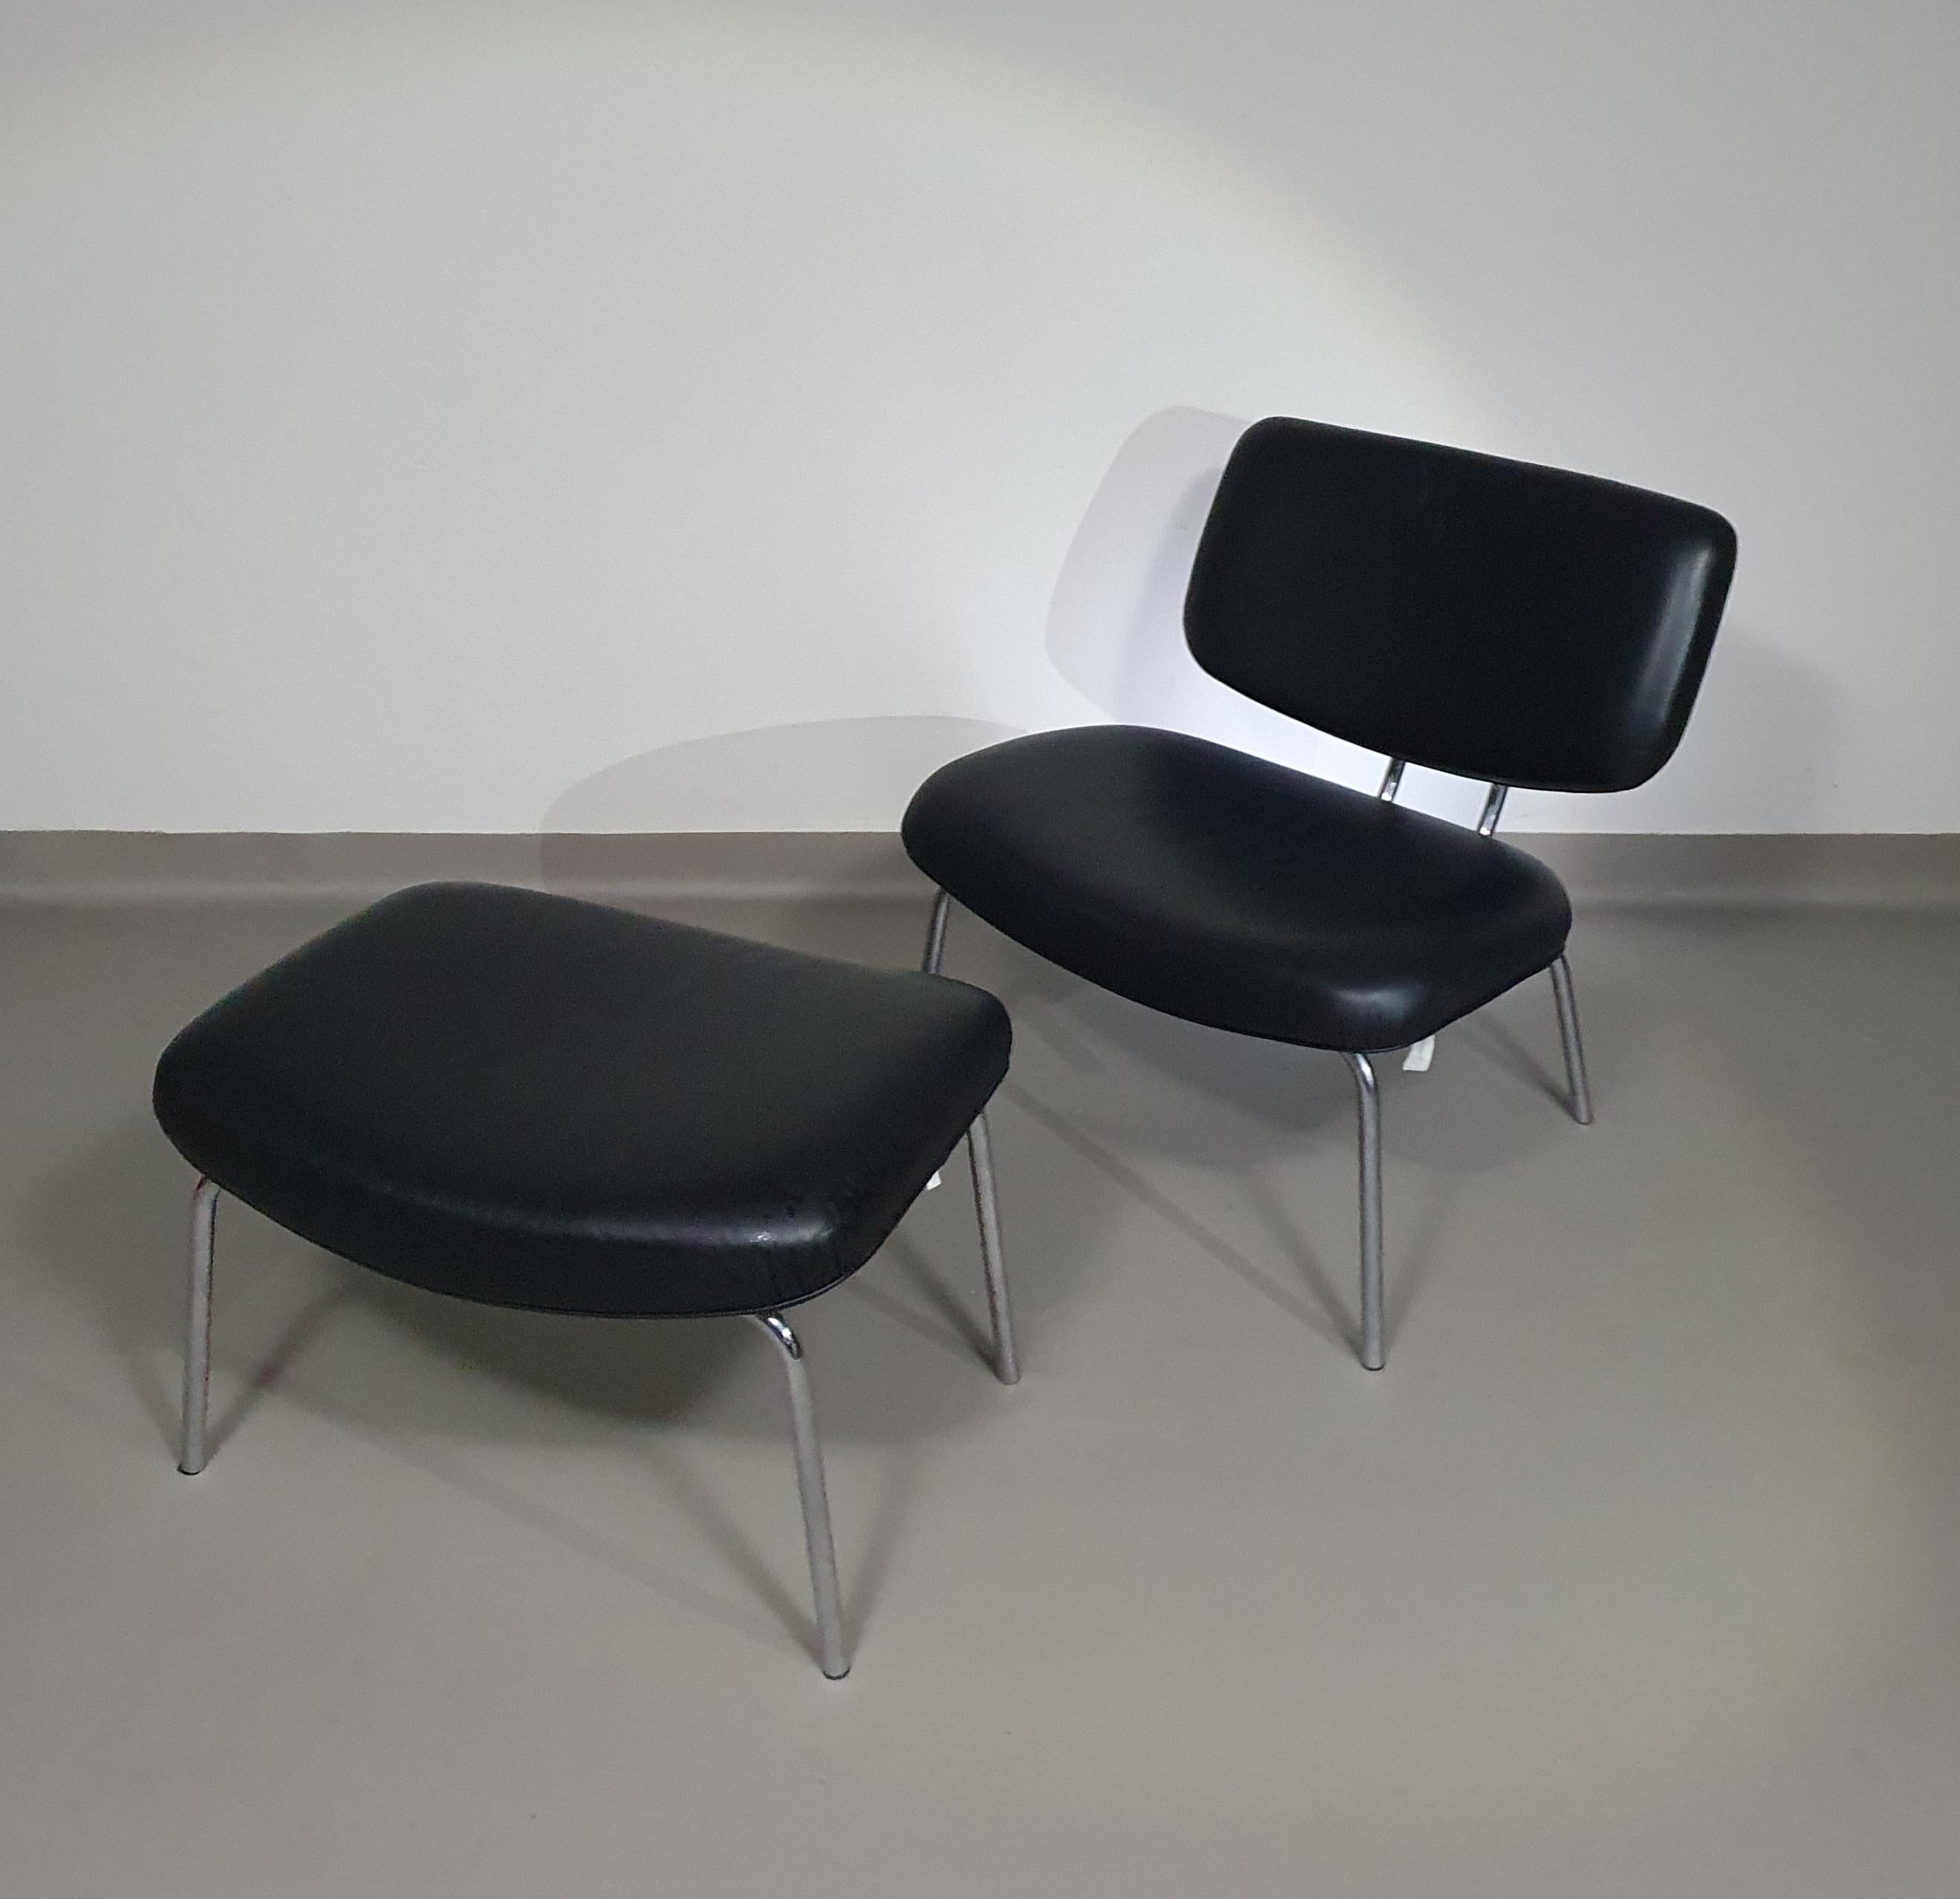 Seltener Zanotta Clea Lounge Chair / Pouf aus schwarzem Leder, 1997 von Kristiina Lassus
Stuhl: Höhe 78 / Breite 69 / Tiefe 68 cm
Pouf: Höhe 43 / Breite 69 / Tiefe 53 cm
